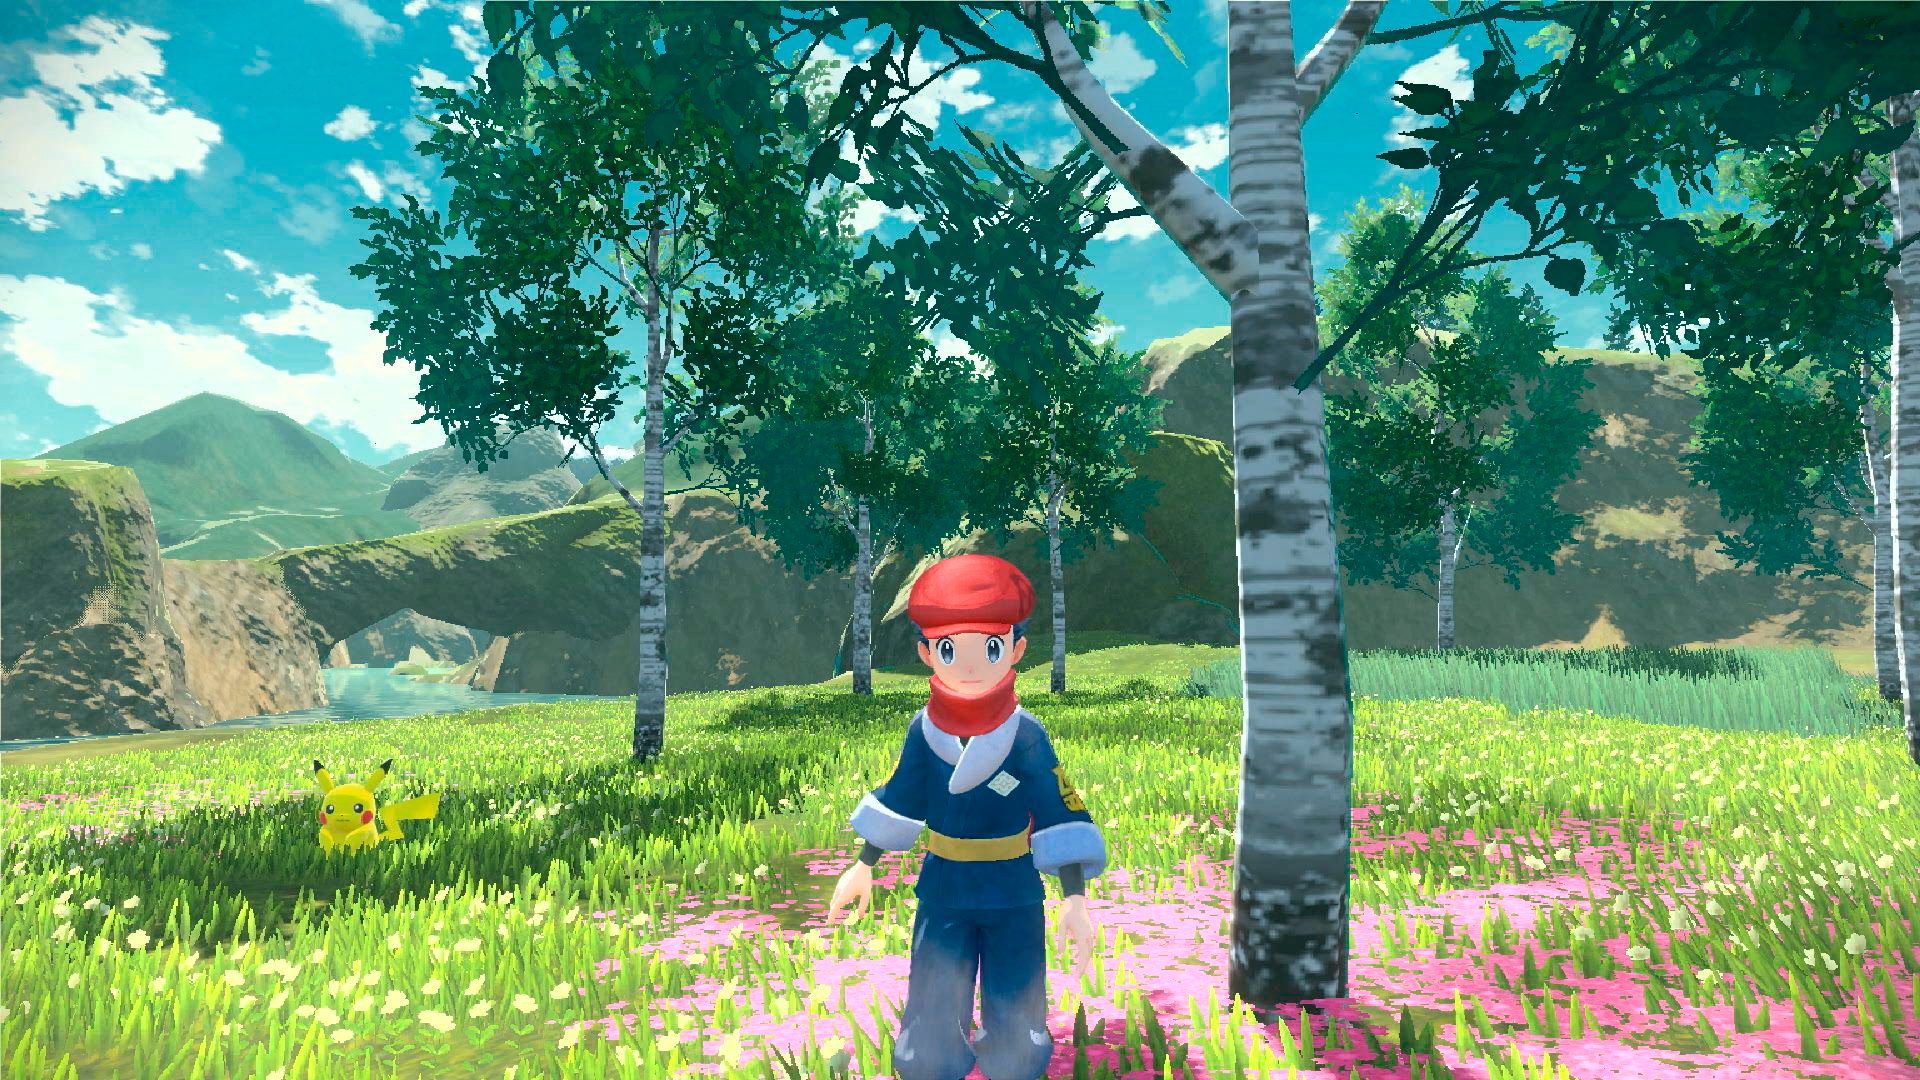 Pokémon Legenden Arceus Nintendo Switch